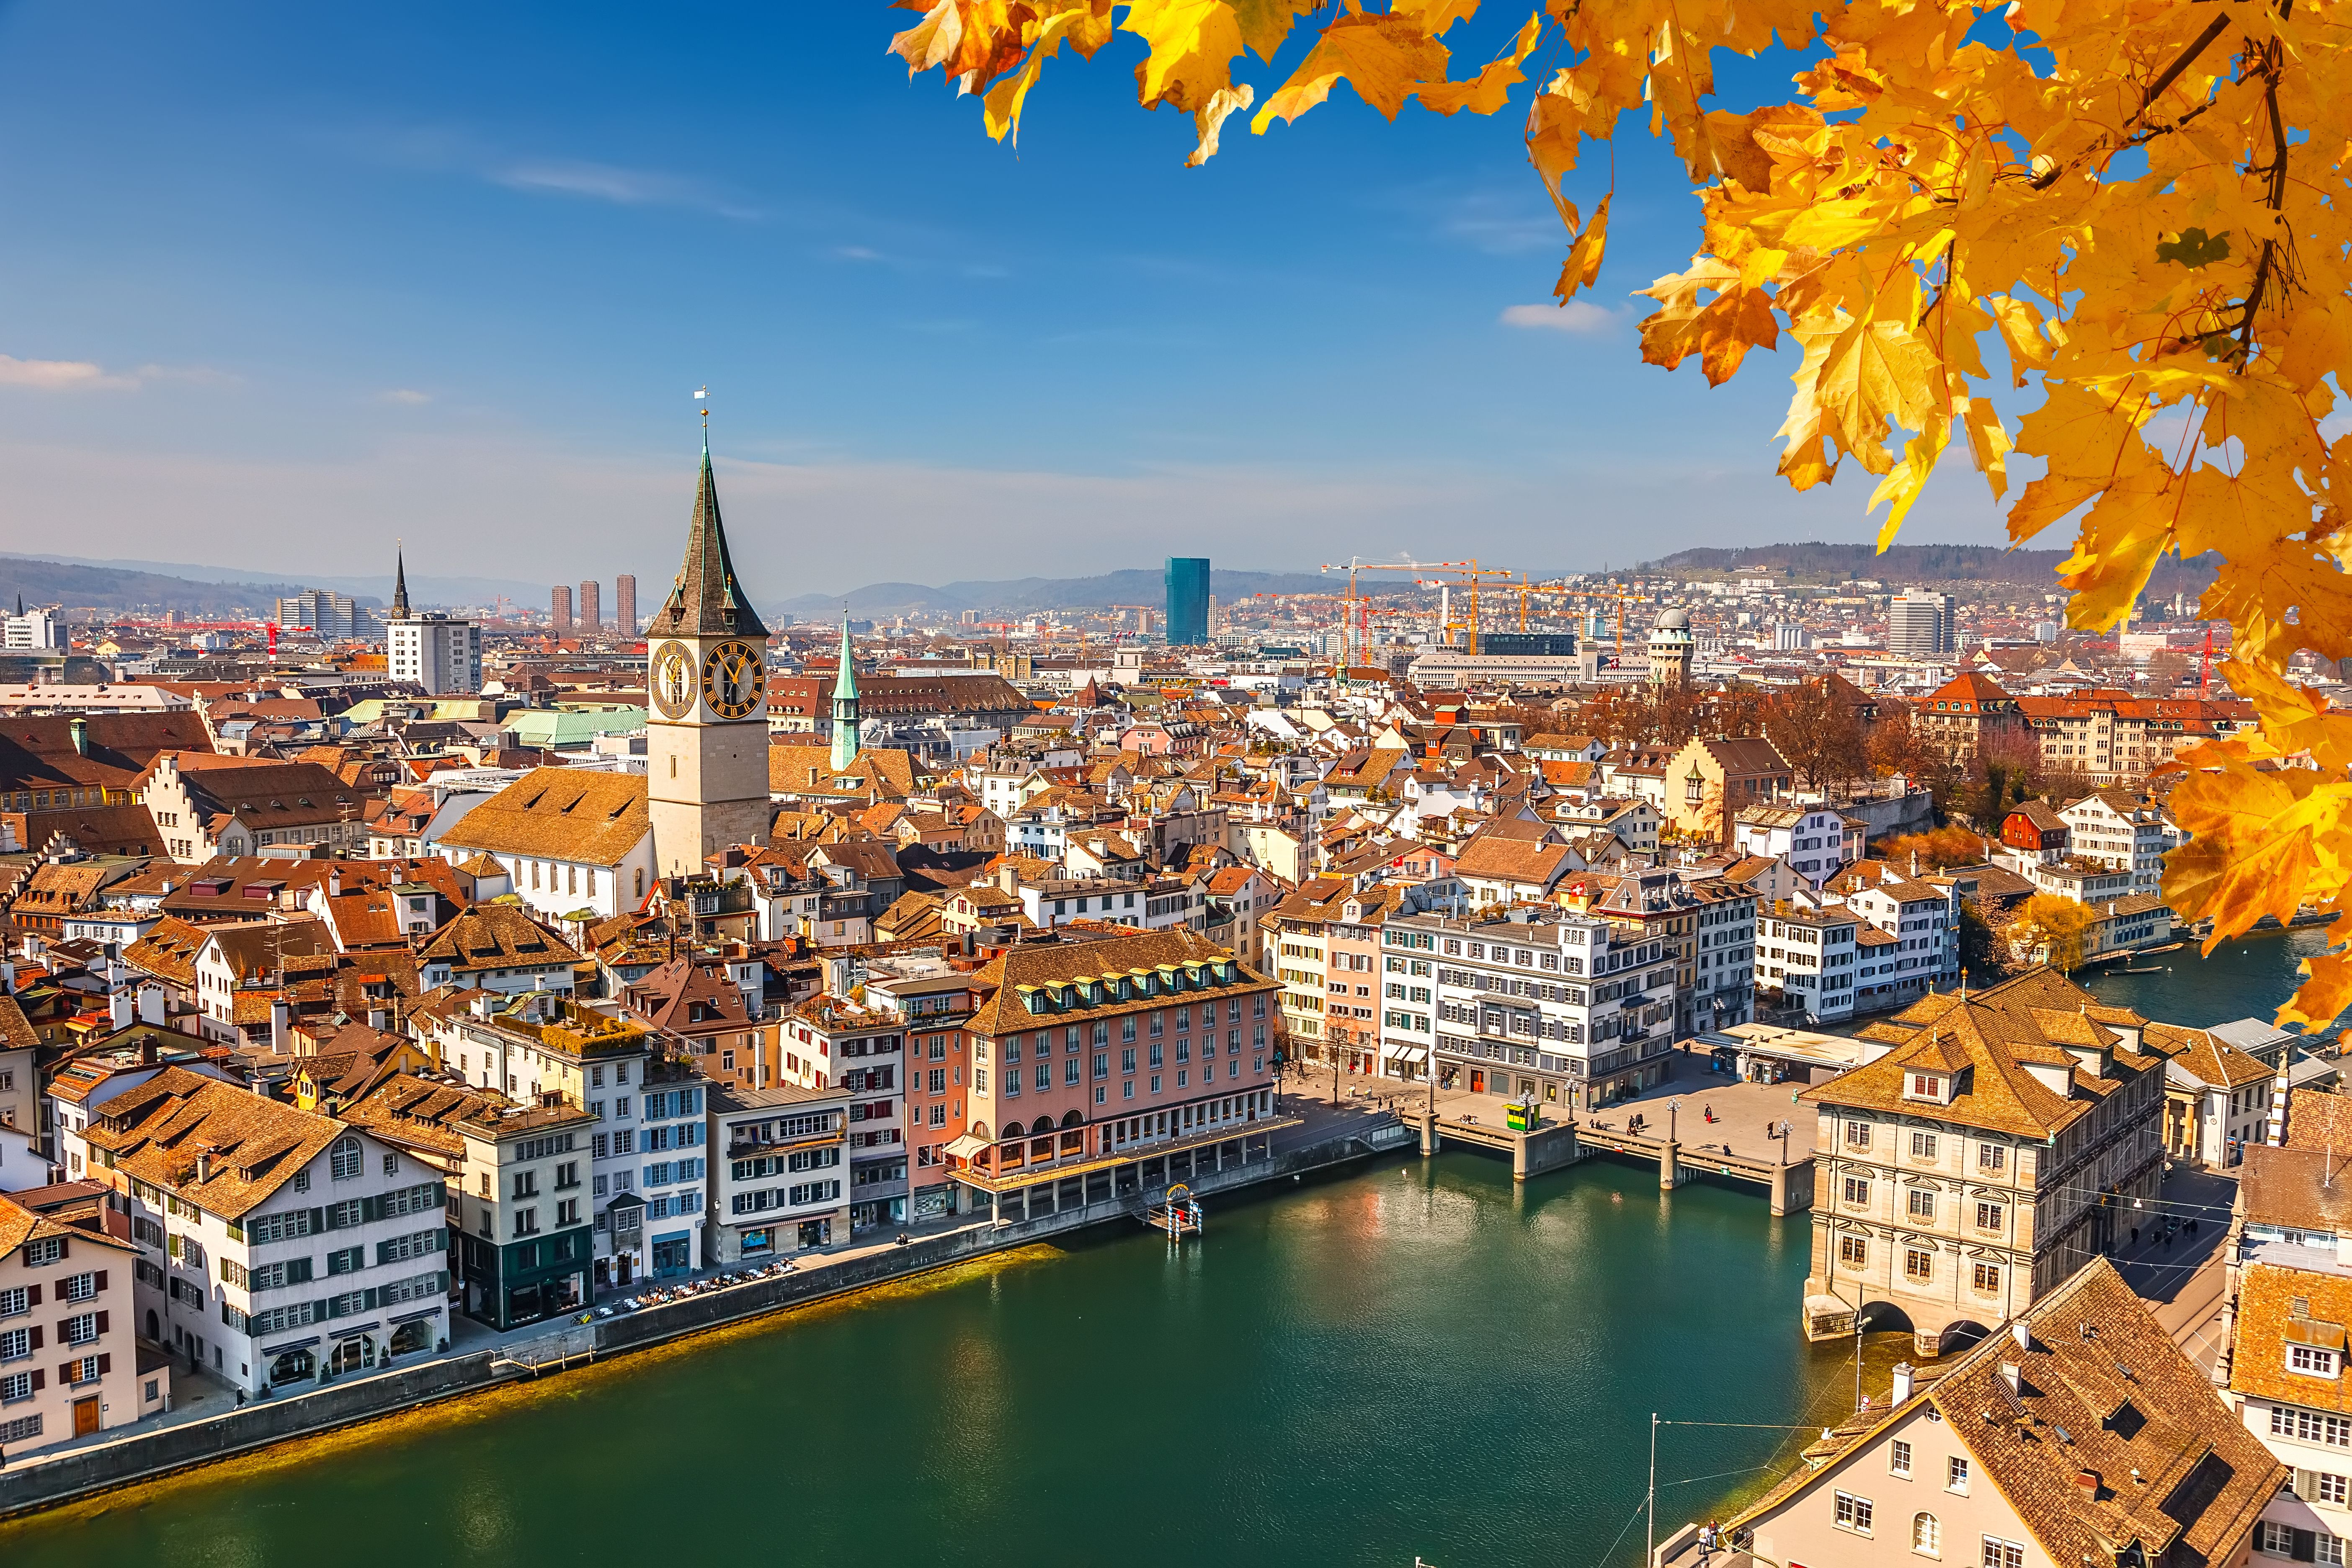 View of downtown Zurich, Switzerland